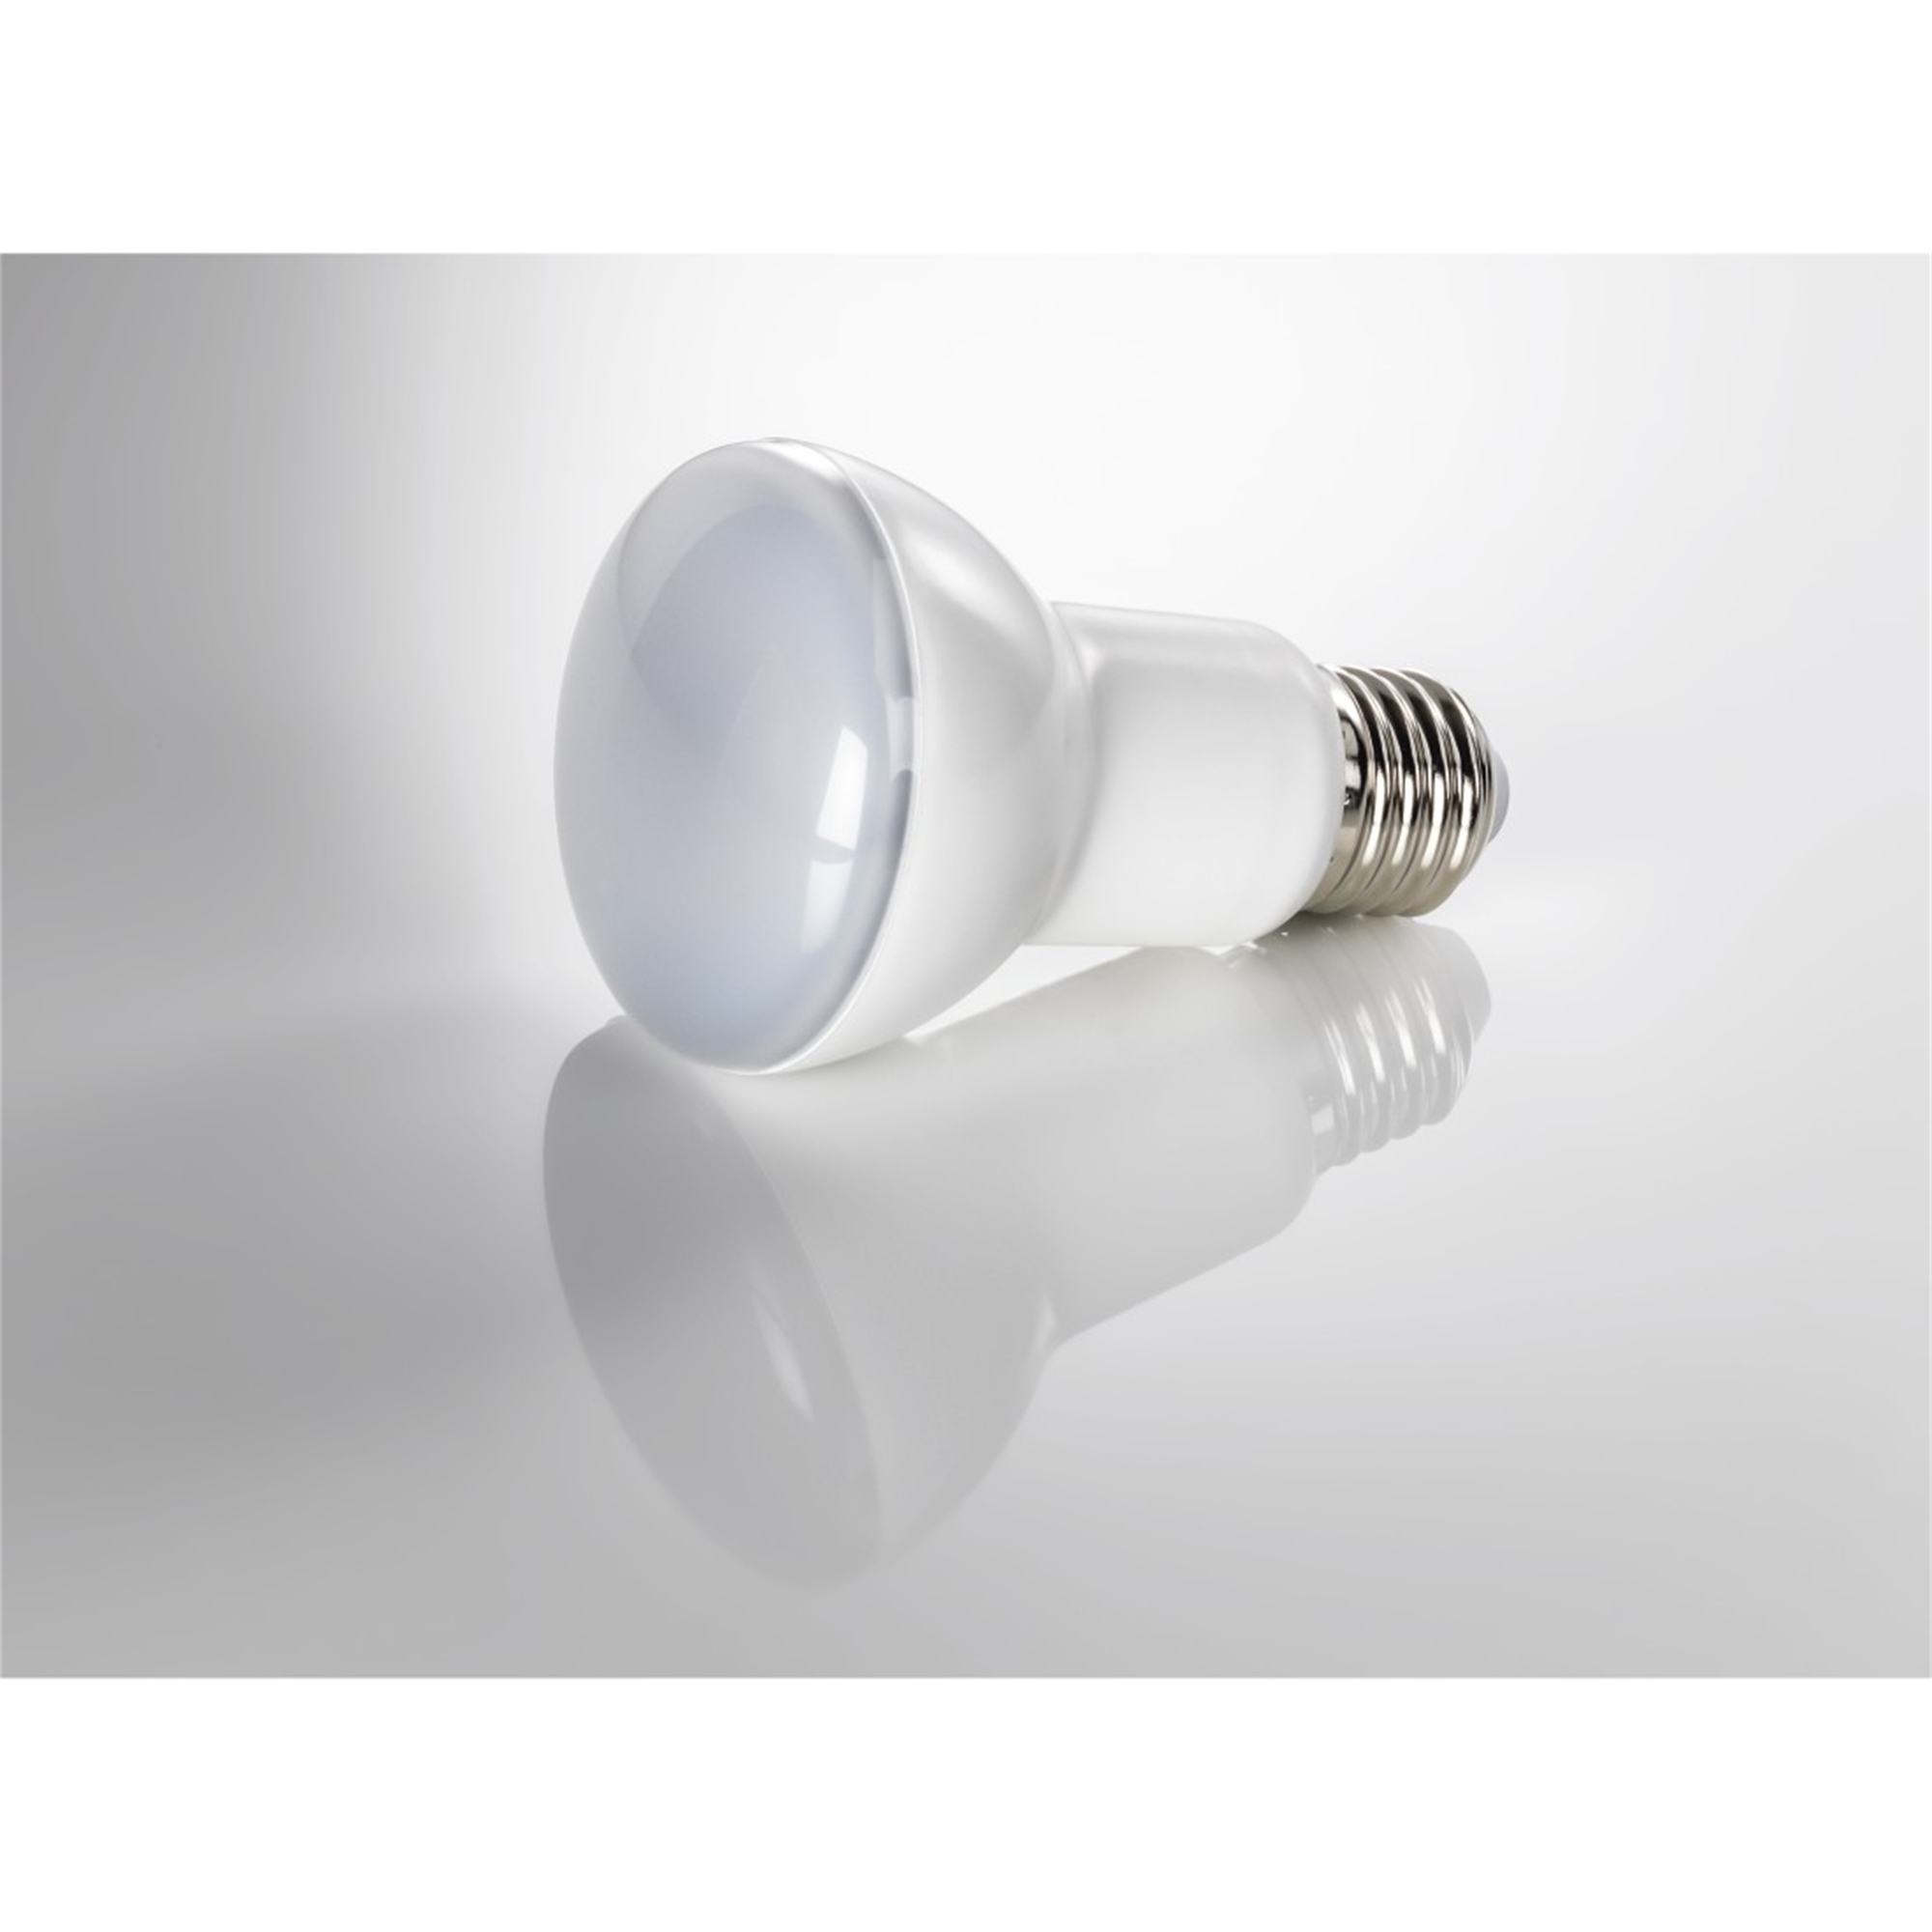 XAVAX 630lm ersetzt LED-Lampe Warmweiß E27, E27 60W